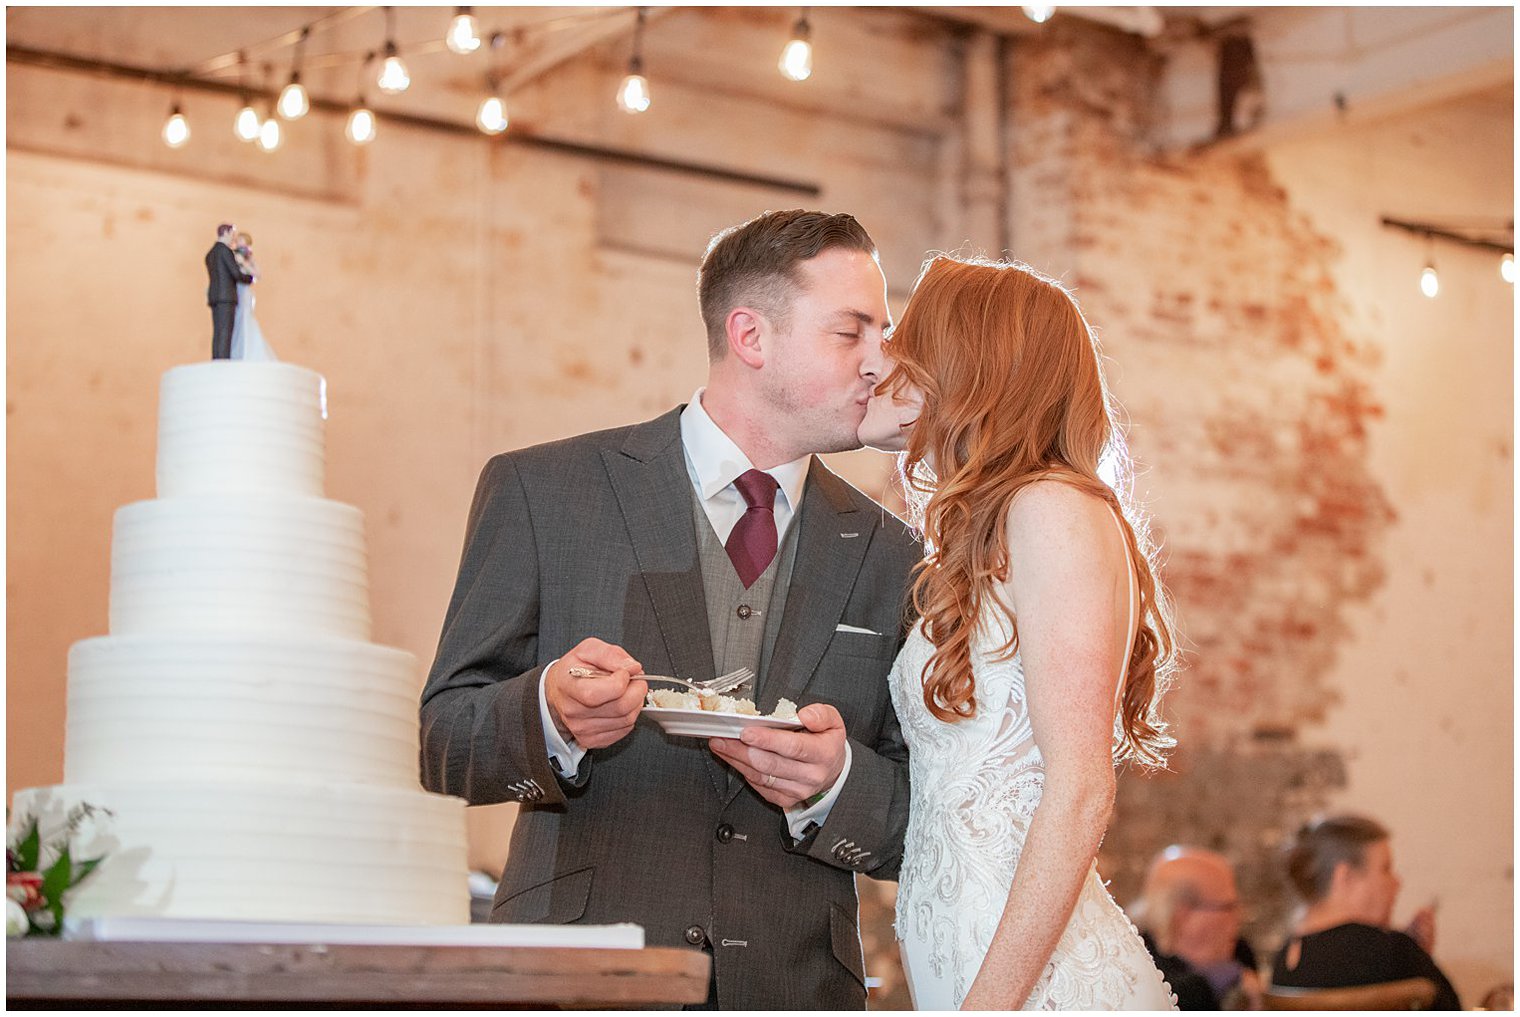 newlyweds kiss while cutting wedding cake during NJ reception